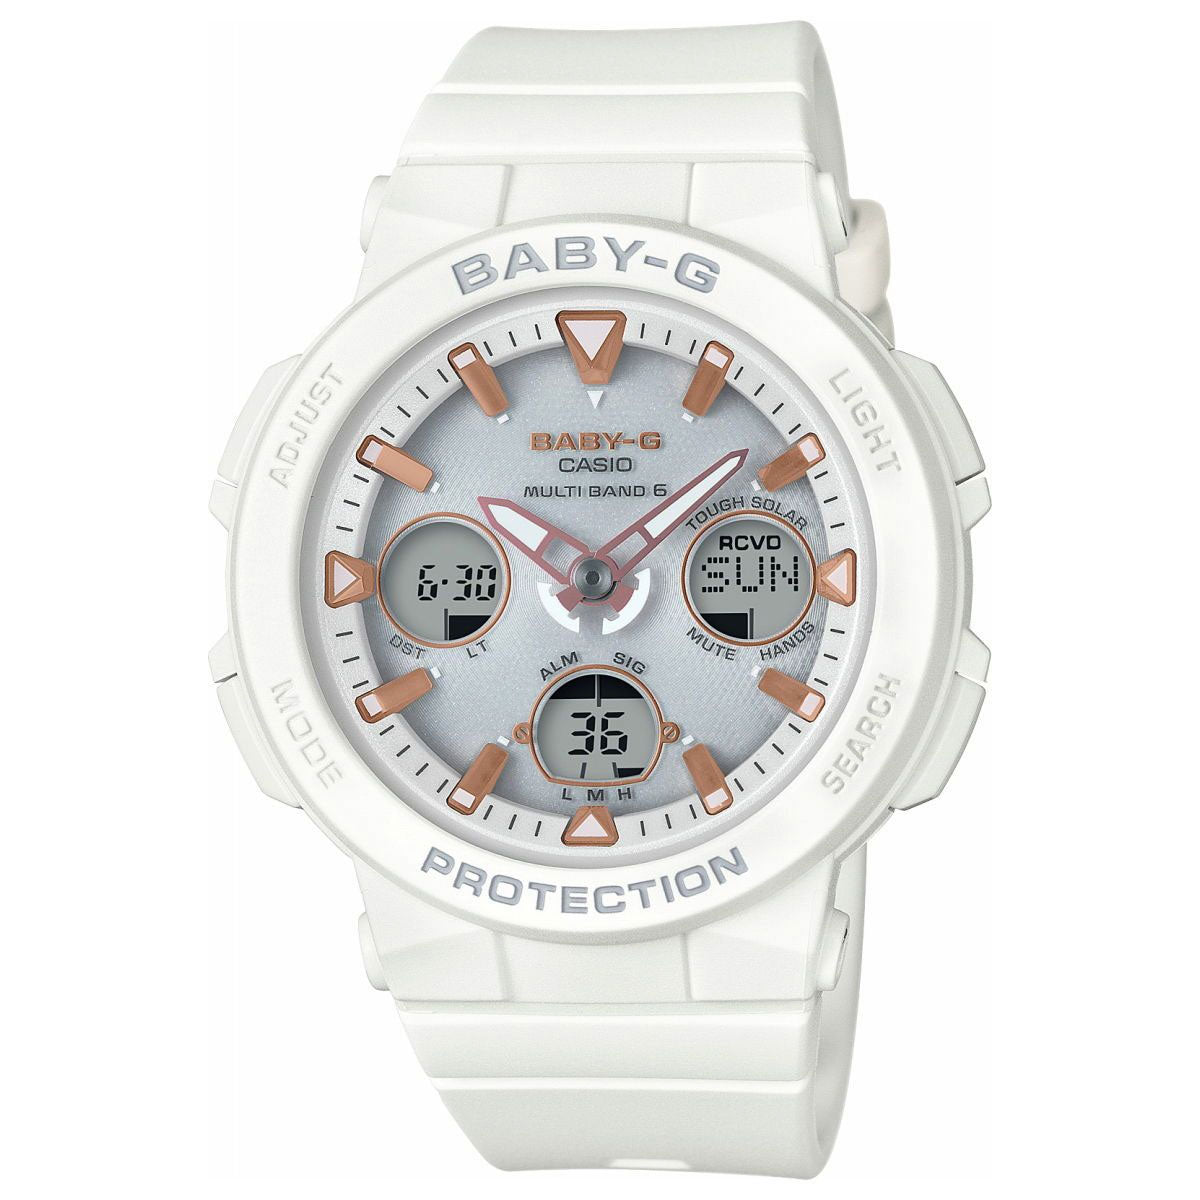 BABY-G カシオ ベビーG 電波 ソーラー ネオンイルミネーター レディース 腕時計 電波時計 ホワイト 白 Beach Traveler Series BGA-2500-7AJF